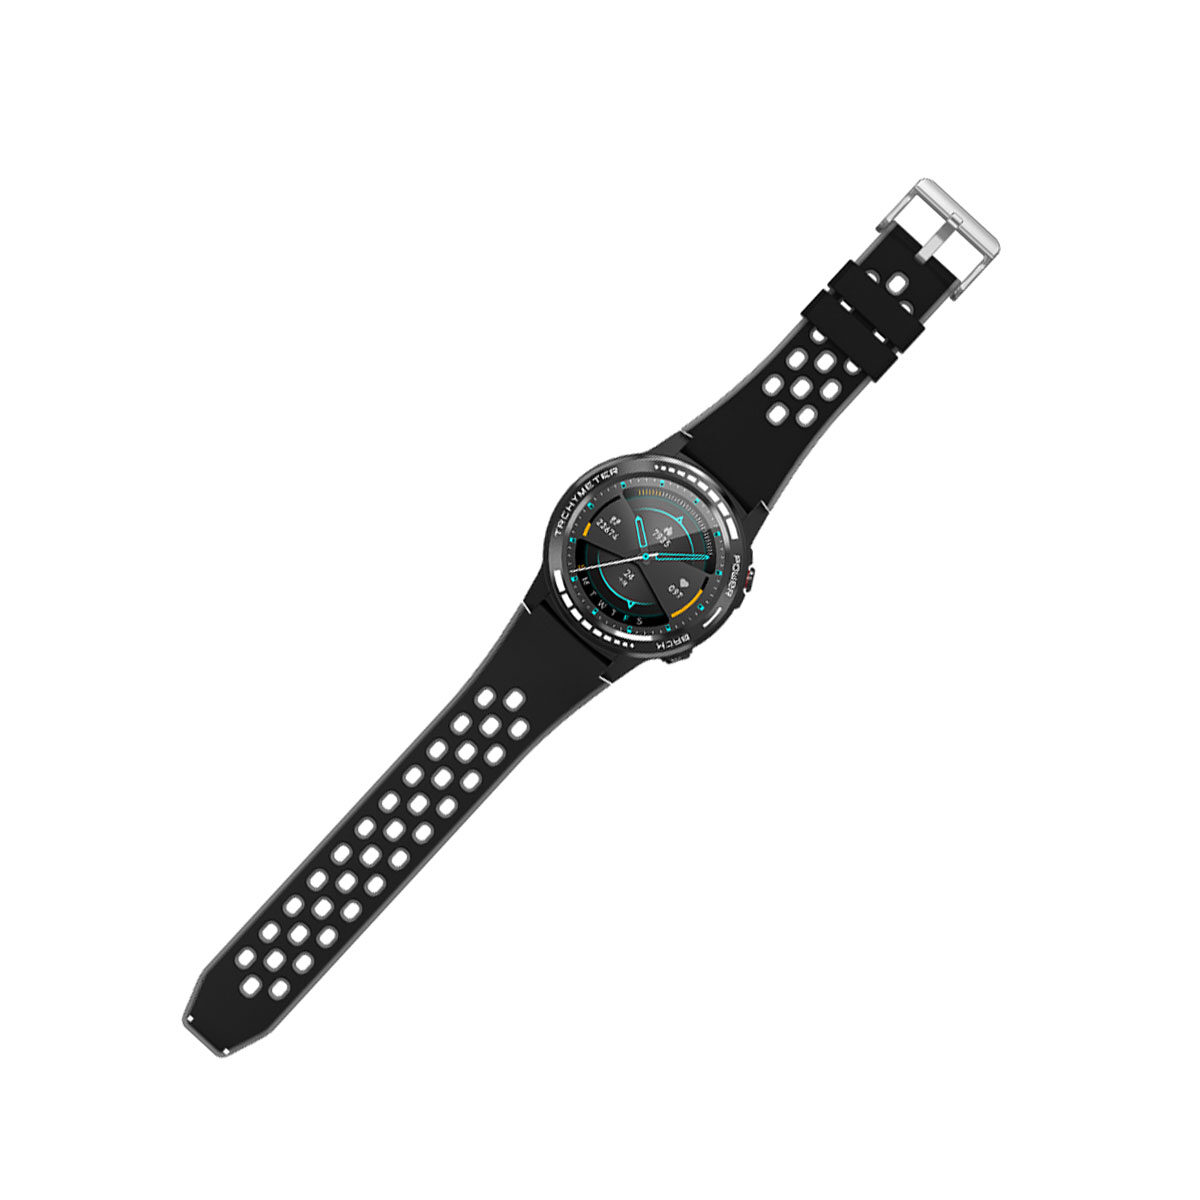 Reloj Inteligente Smartwatch Sw37 Con Gps Tarjeta Sim Y Asistente De Voz  Siri con Ofertas en Carrefour